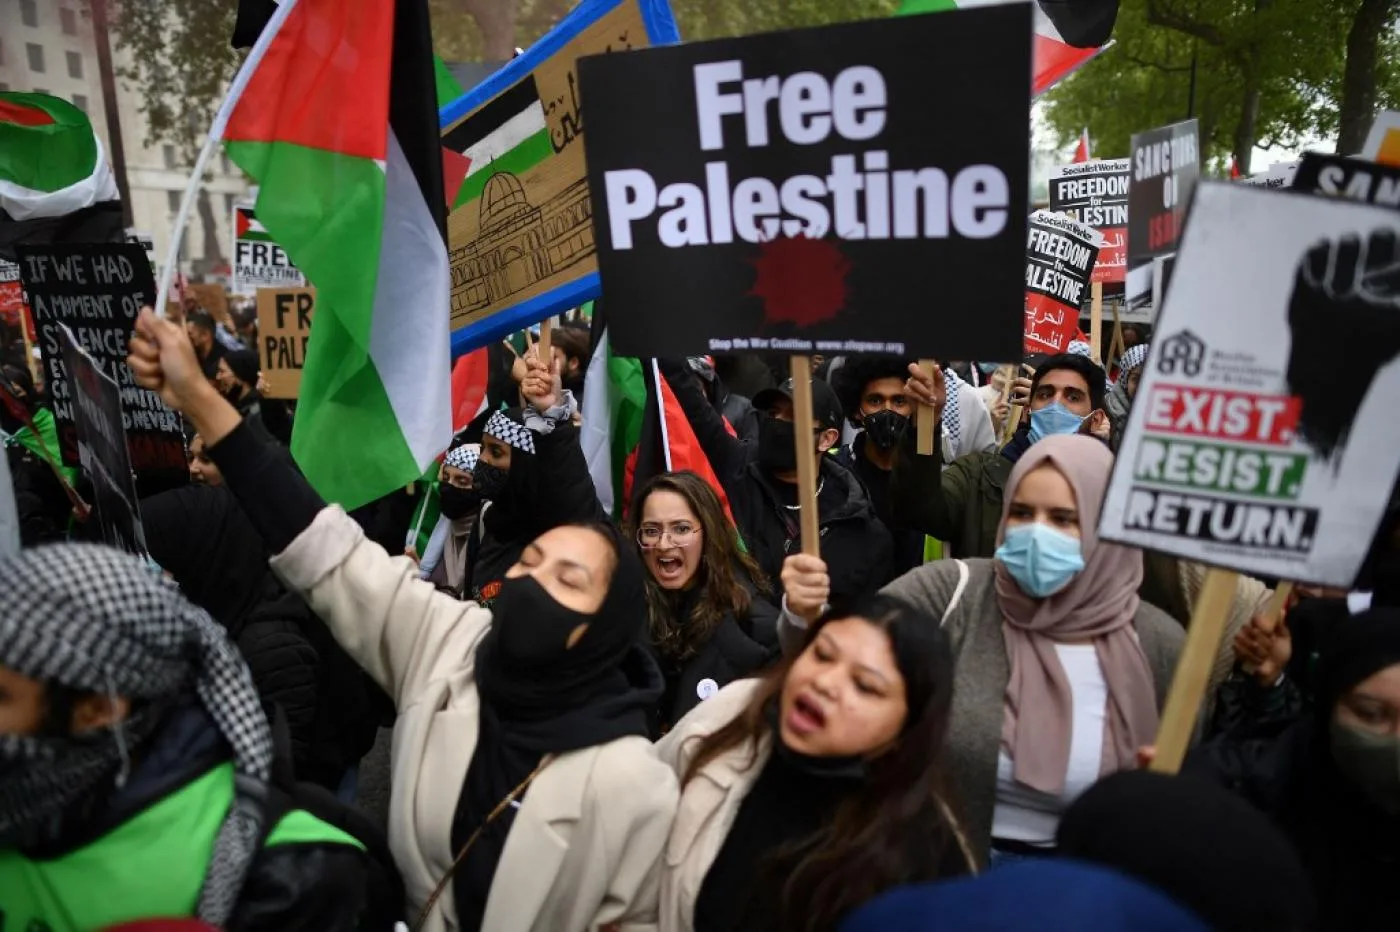 المتظاهرون المؤيدون لفلسطين في وسط لندن يوم 22 من مايو/أيار 2021